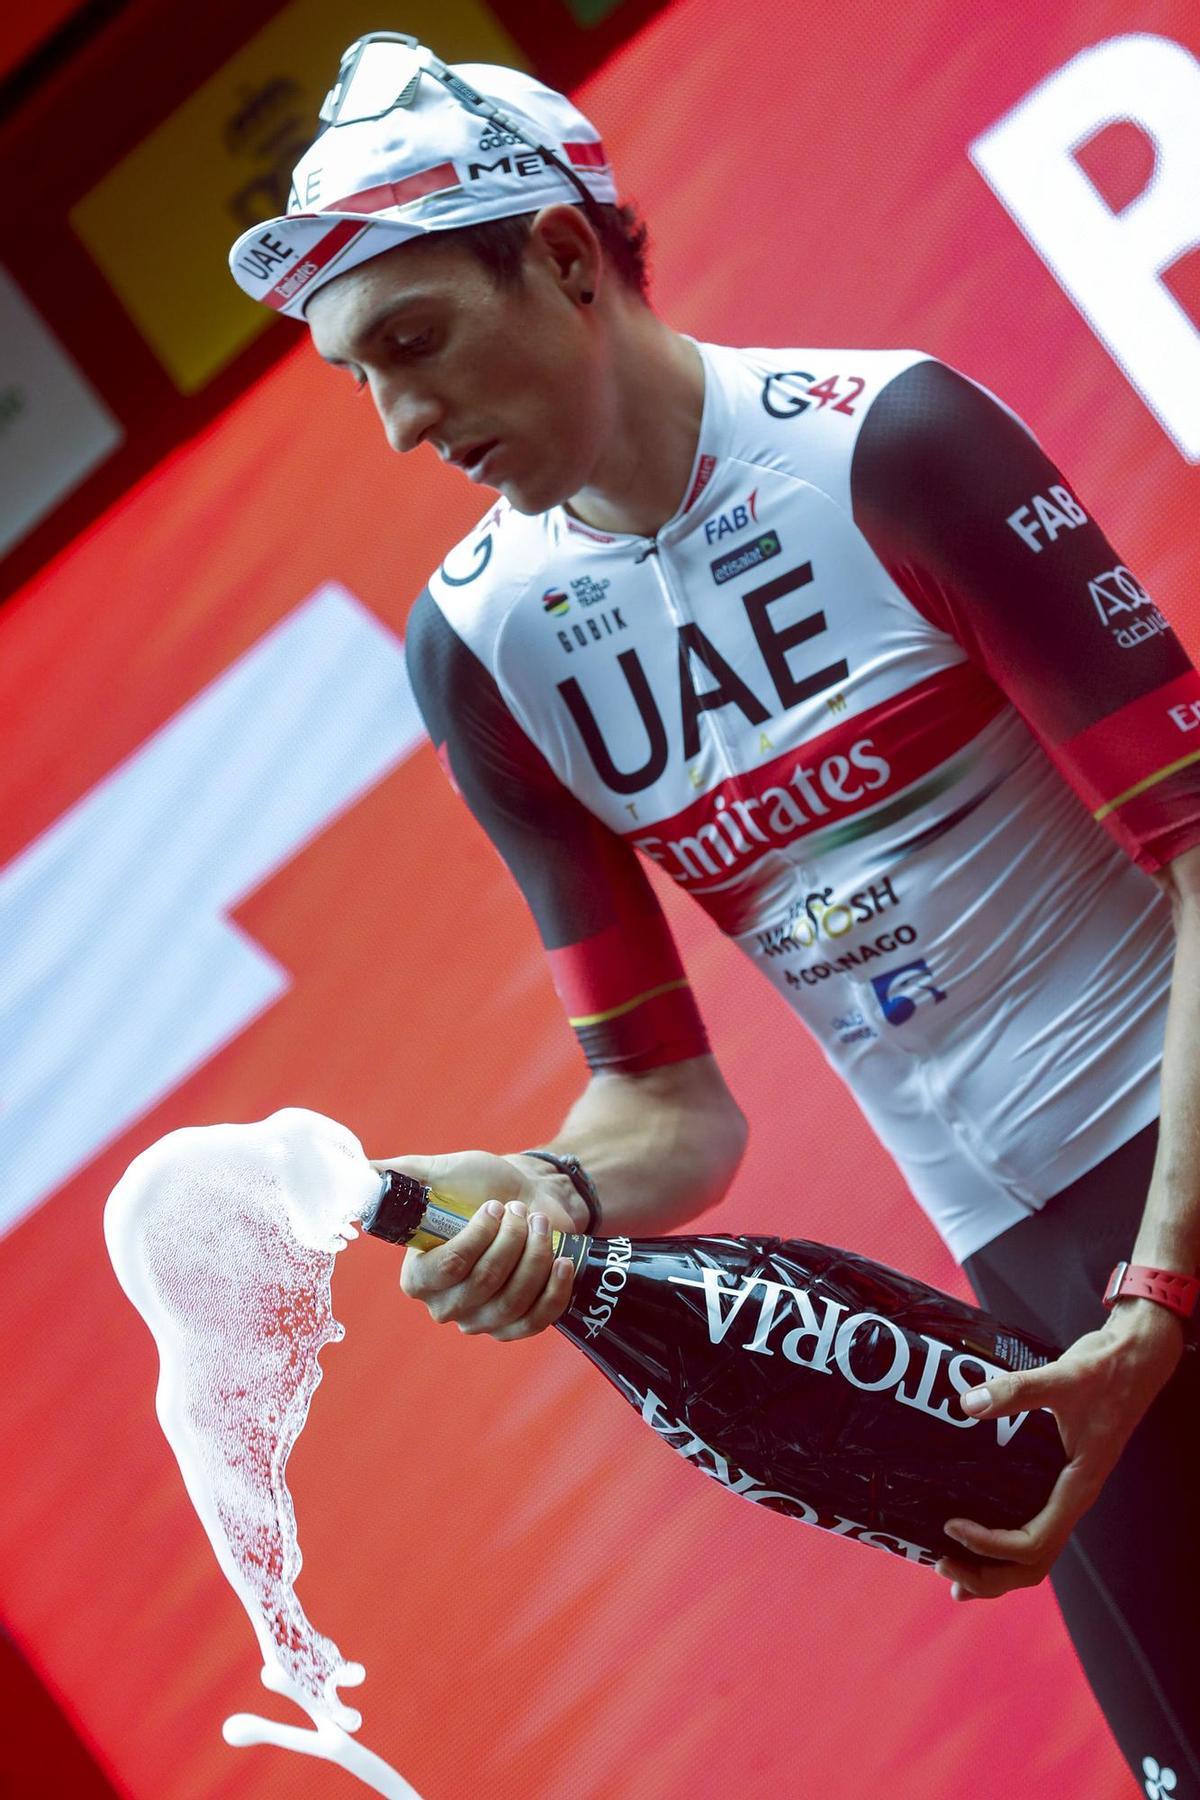 ZARAUTZ, 24/08/2022.- El corredor Marc Soler, del equipo UAE, en el podio como vencedor de la quinta etapa de La Vuelta, disputada este miércoles entre Irún y Bilbao con 187,2 km de recorrido.- EFE/Javier Lizón